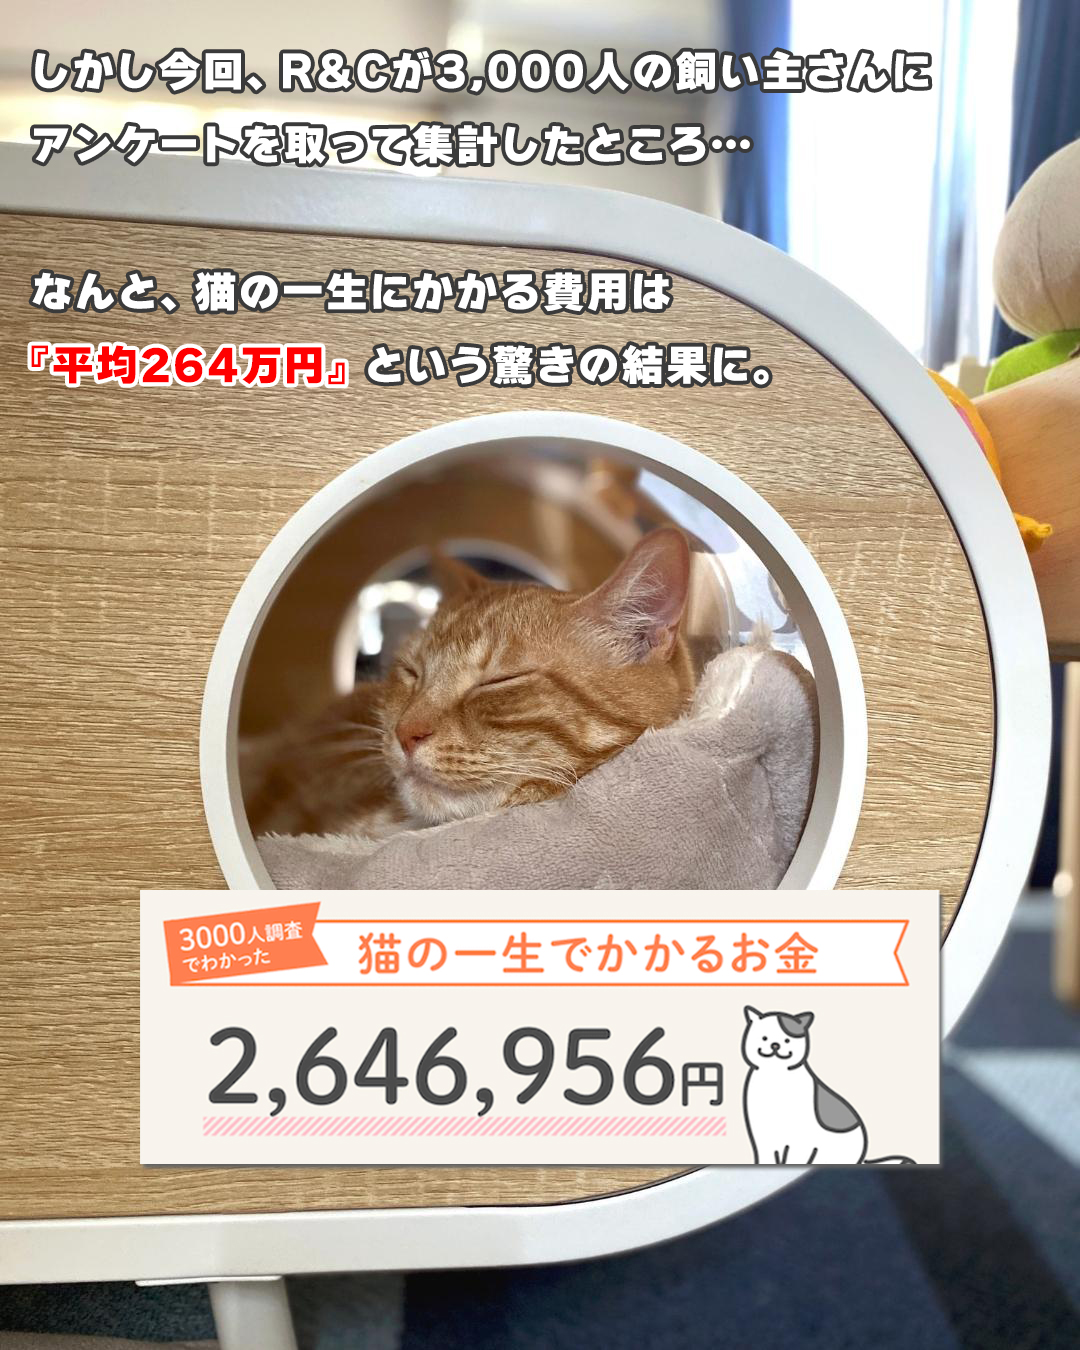 【画像】猫の飼育費、1匹270万円かかることが判明😿